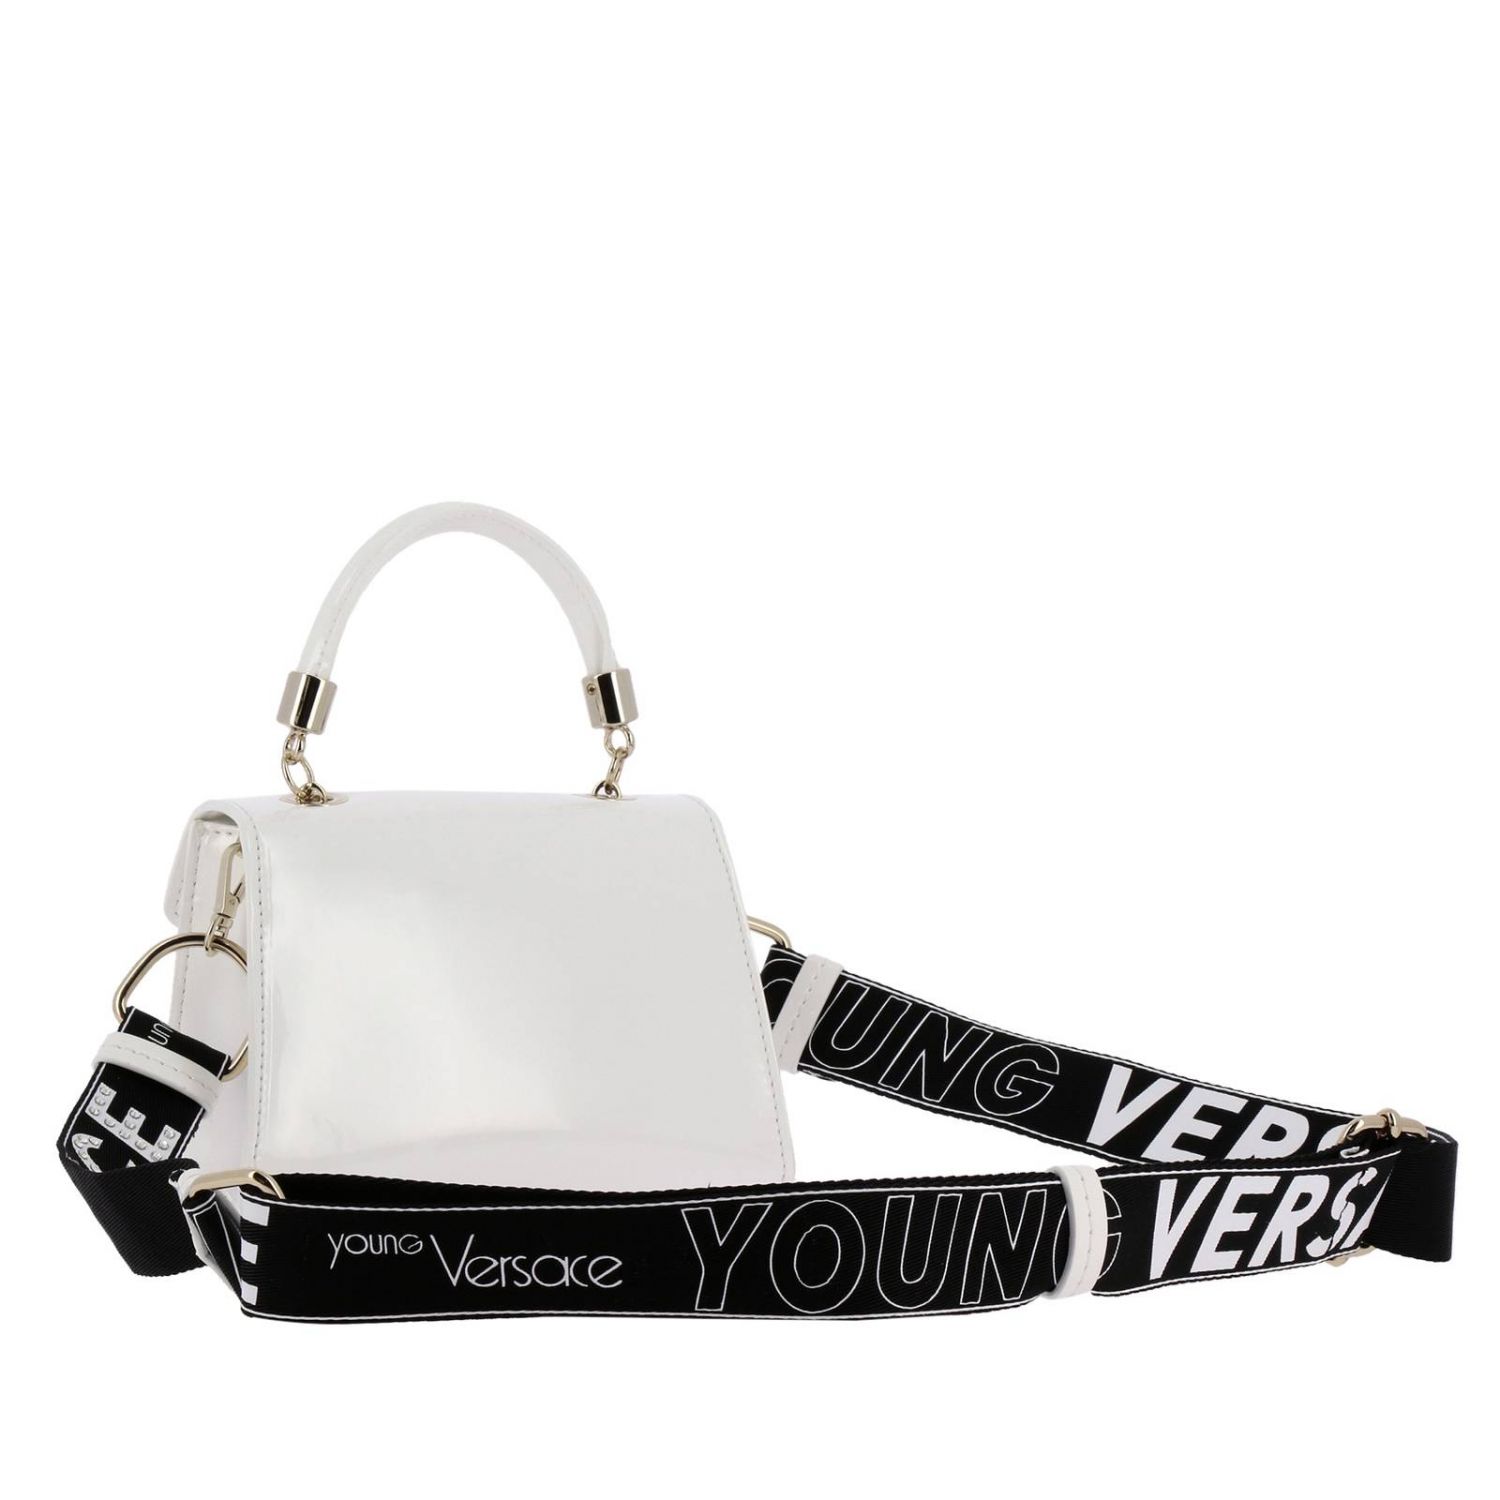 Bag kids Versace Young | Bag Young Versace Kids White | Bag Young ...